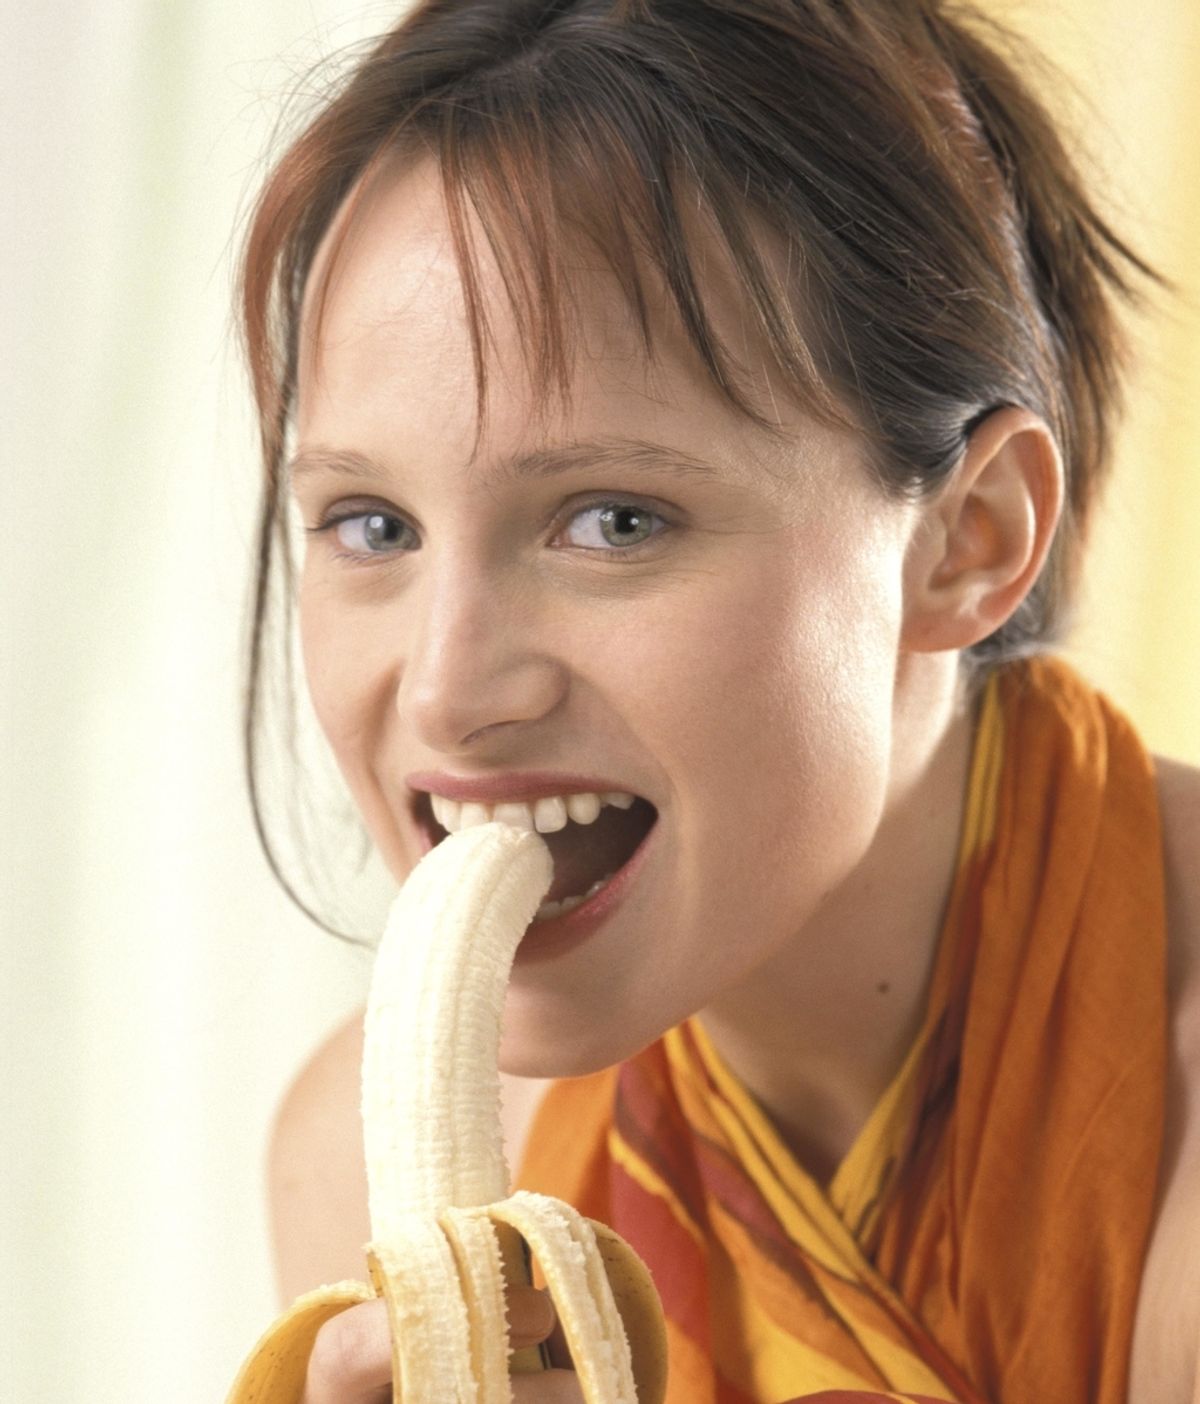 Mujer comiendo plátano